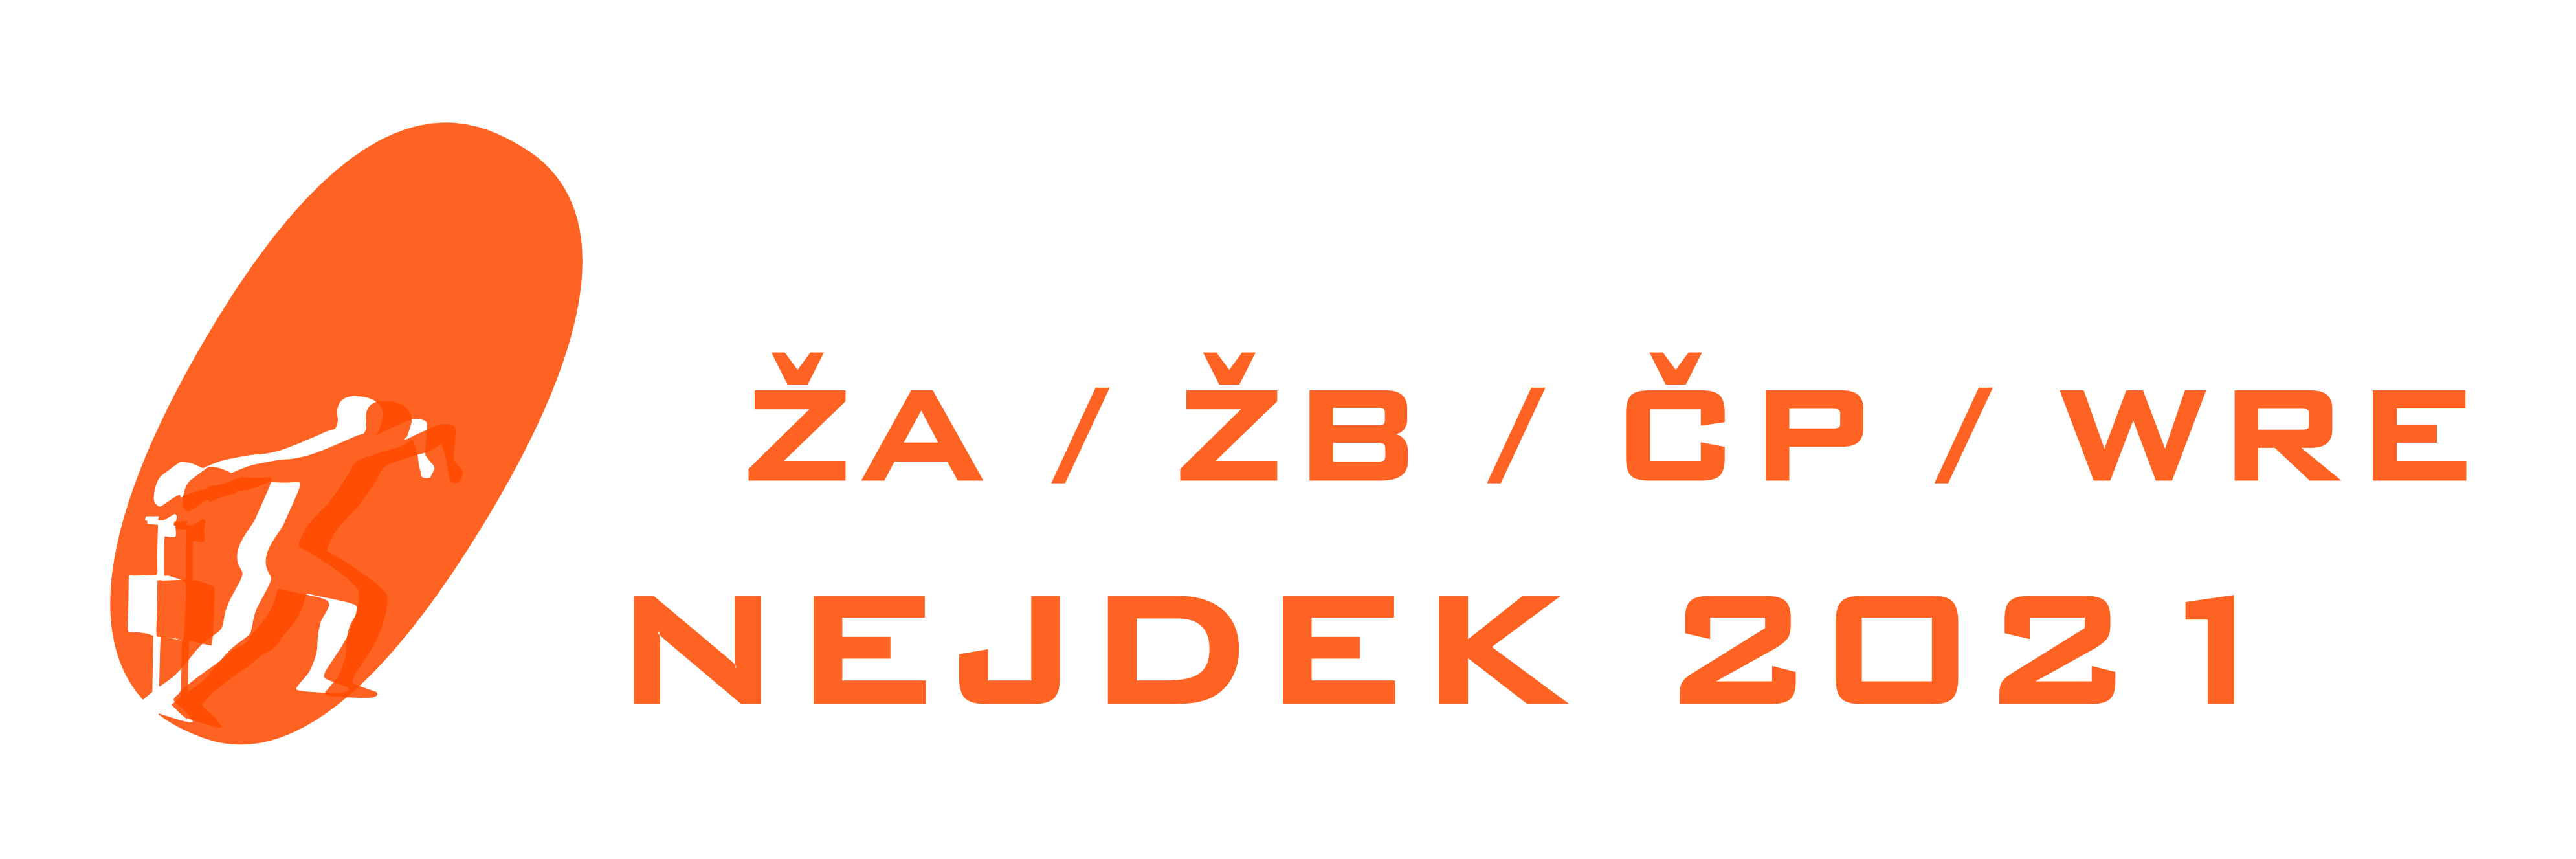 ŽA / ŽB / ČP / WRE Nejdek 2021